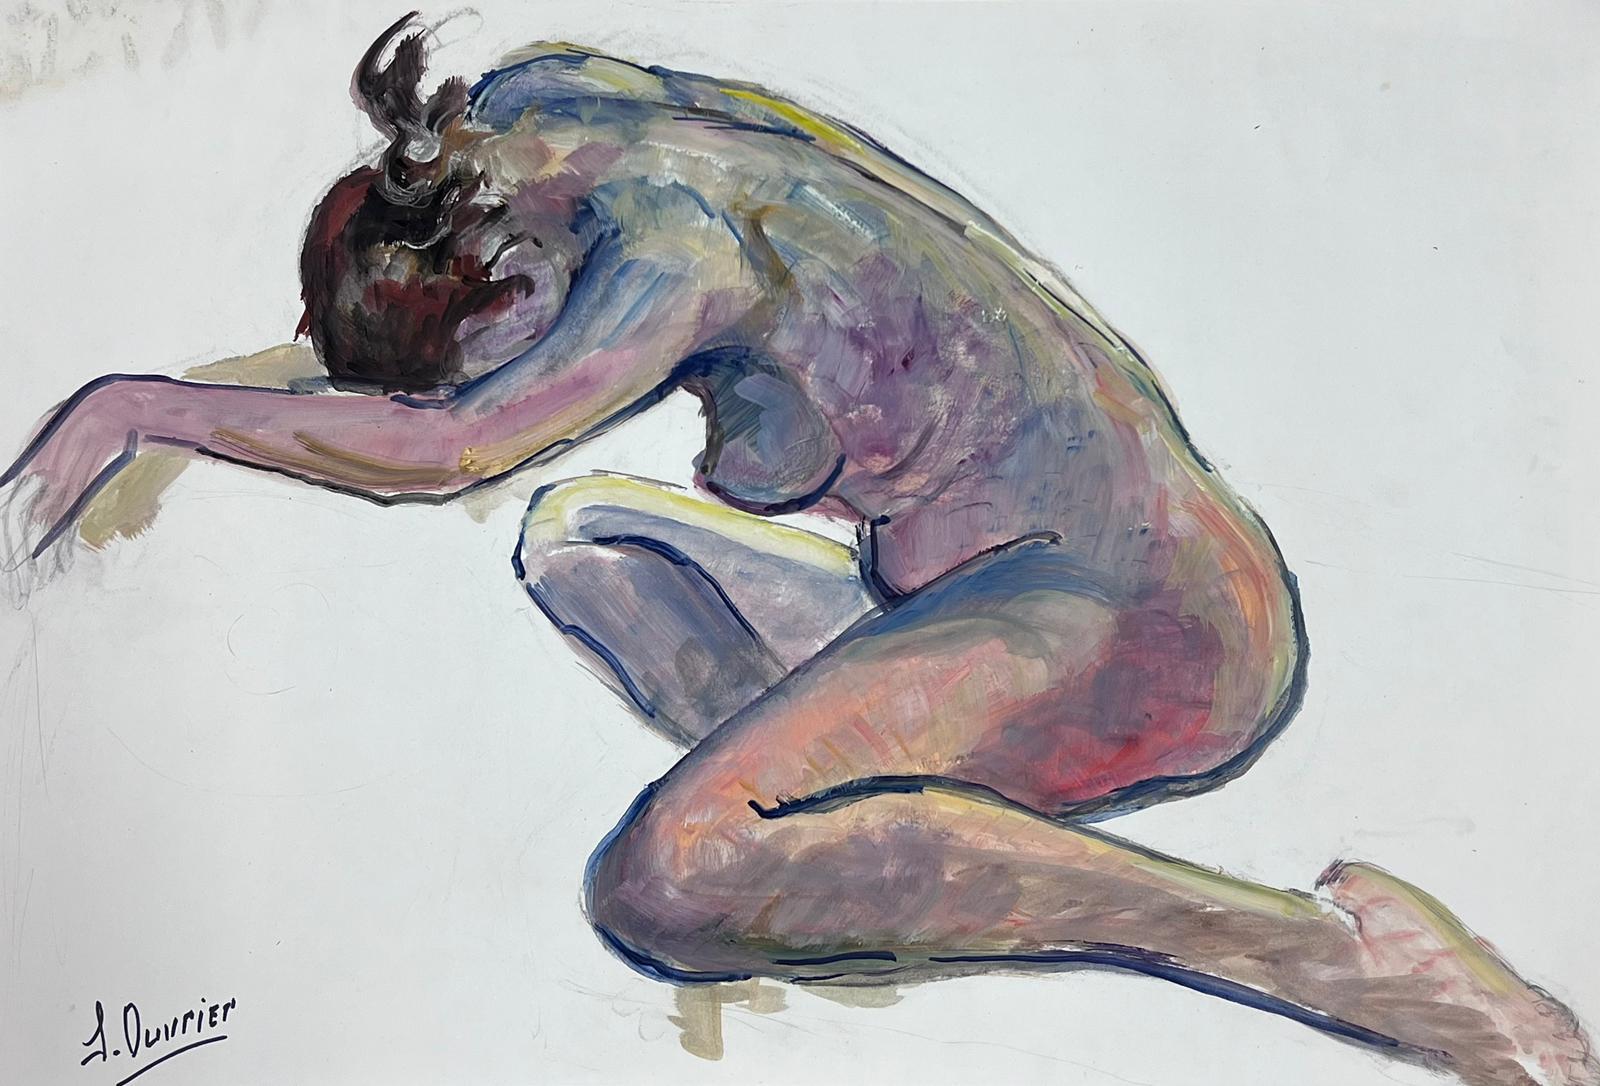 French Modernist Nude Painting – Liegesessel, Akt, Modell, französisches modernistisches Gemälde der Provence, 1970er Jahre